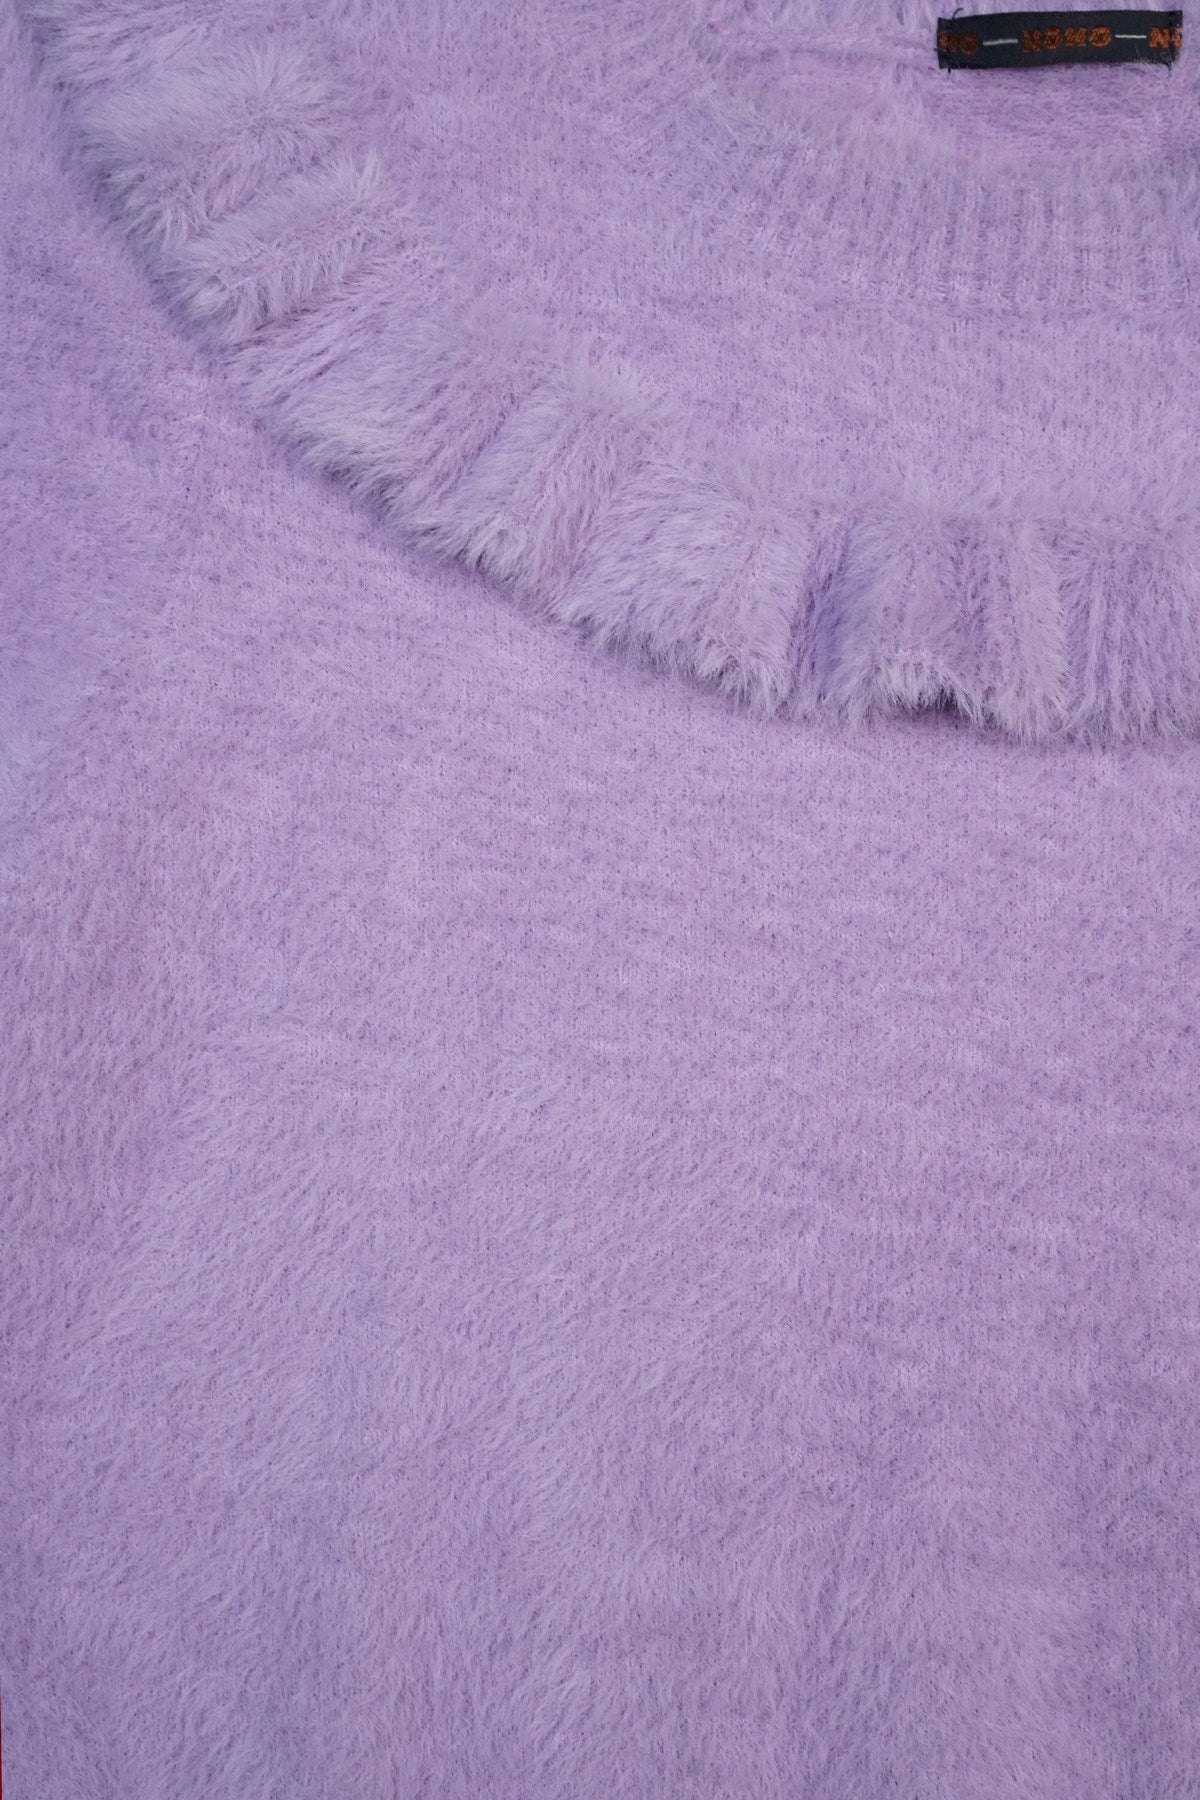 Meisjes Ketan girls soft knitted sweater van NoNo in de kleur Galaxy Lilac in maat 134-140.